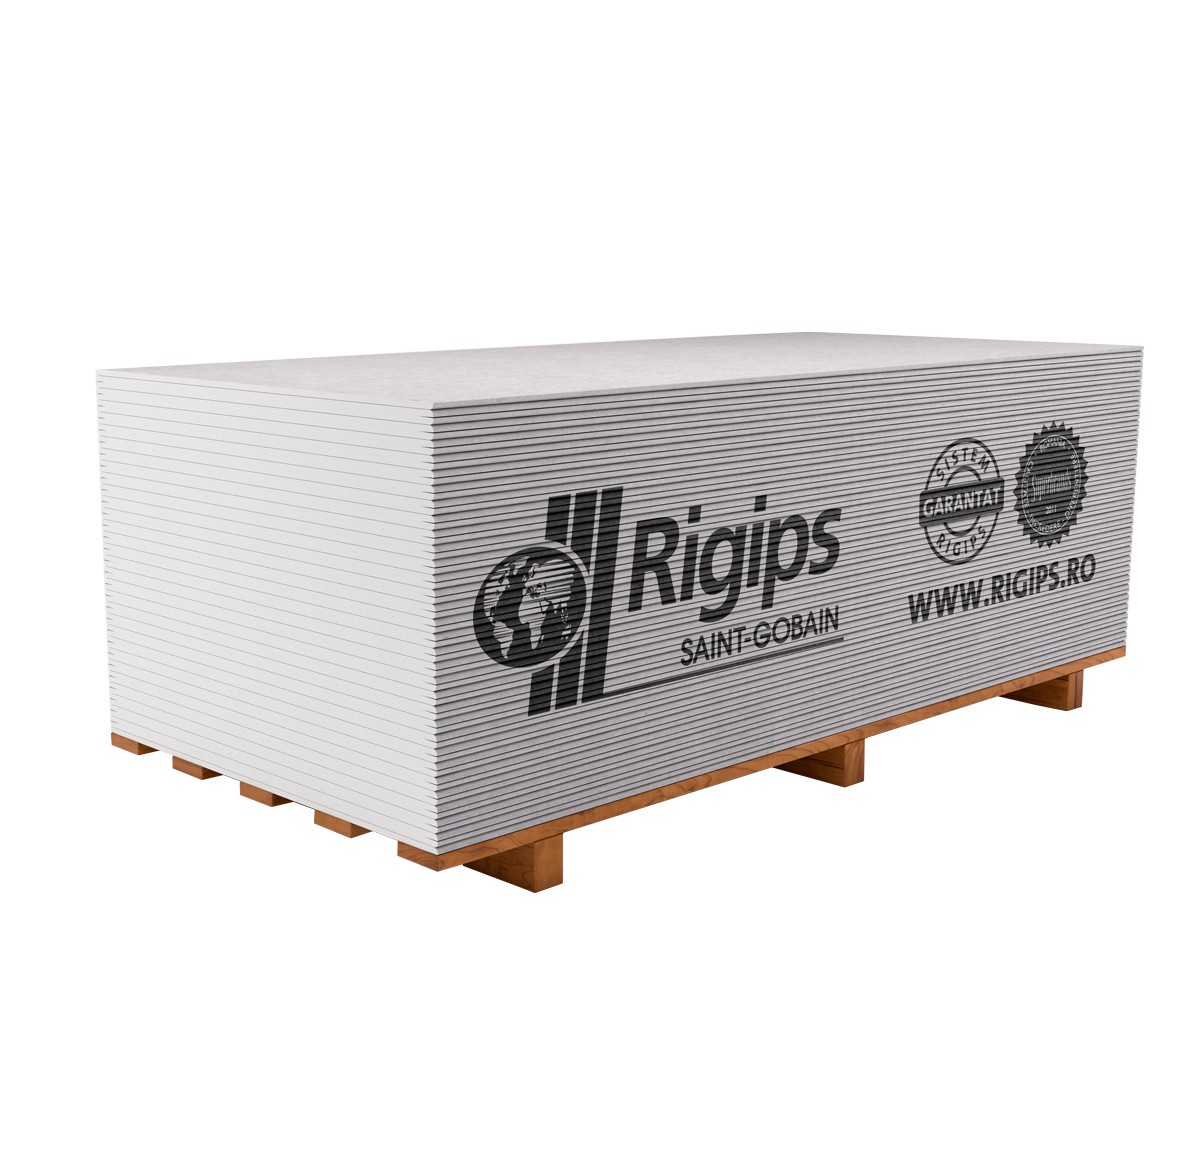 Gips-carton 12,5 RB (1,2*2,6) REGIPS